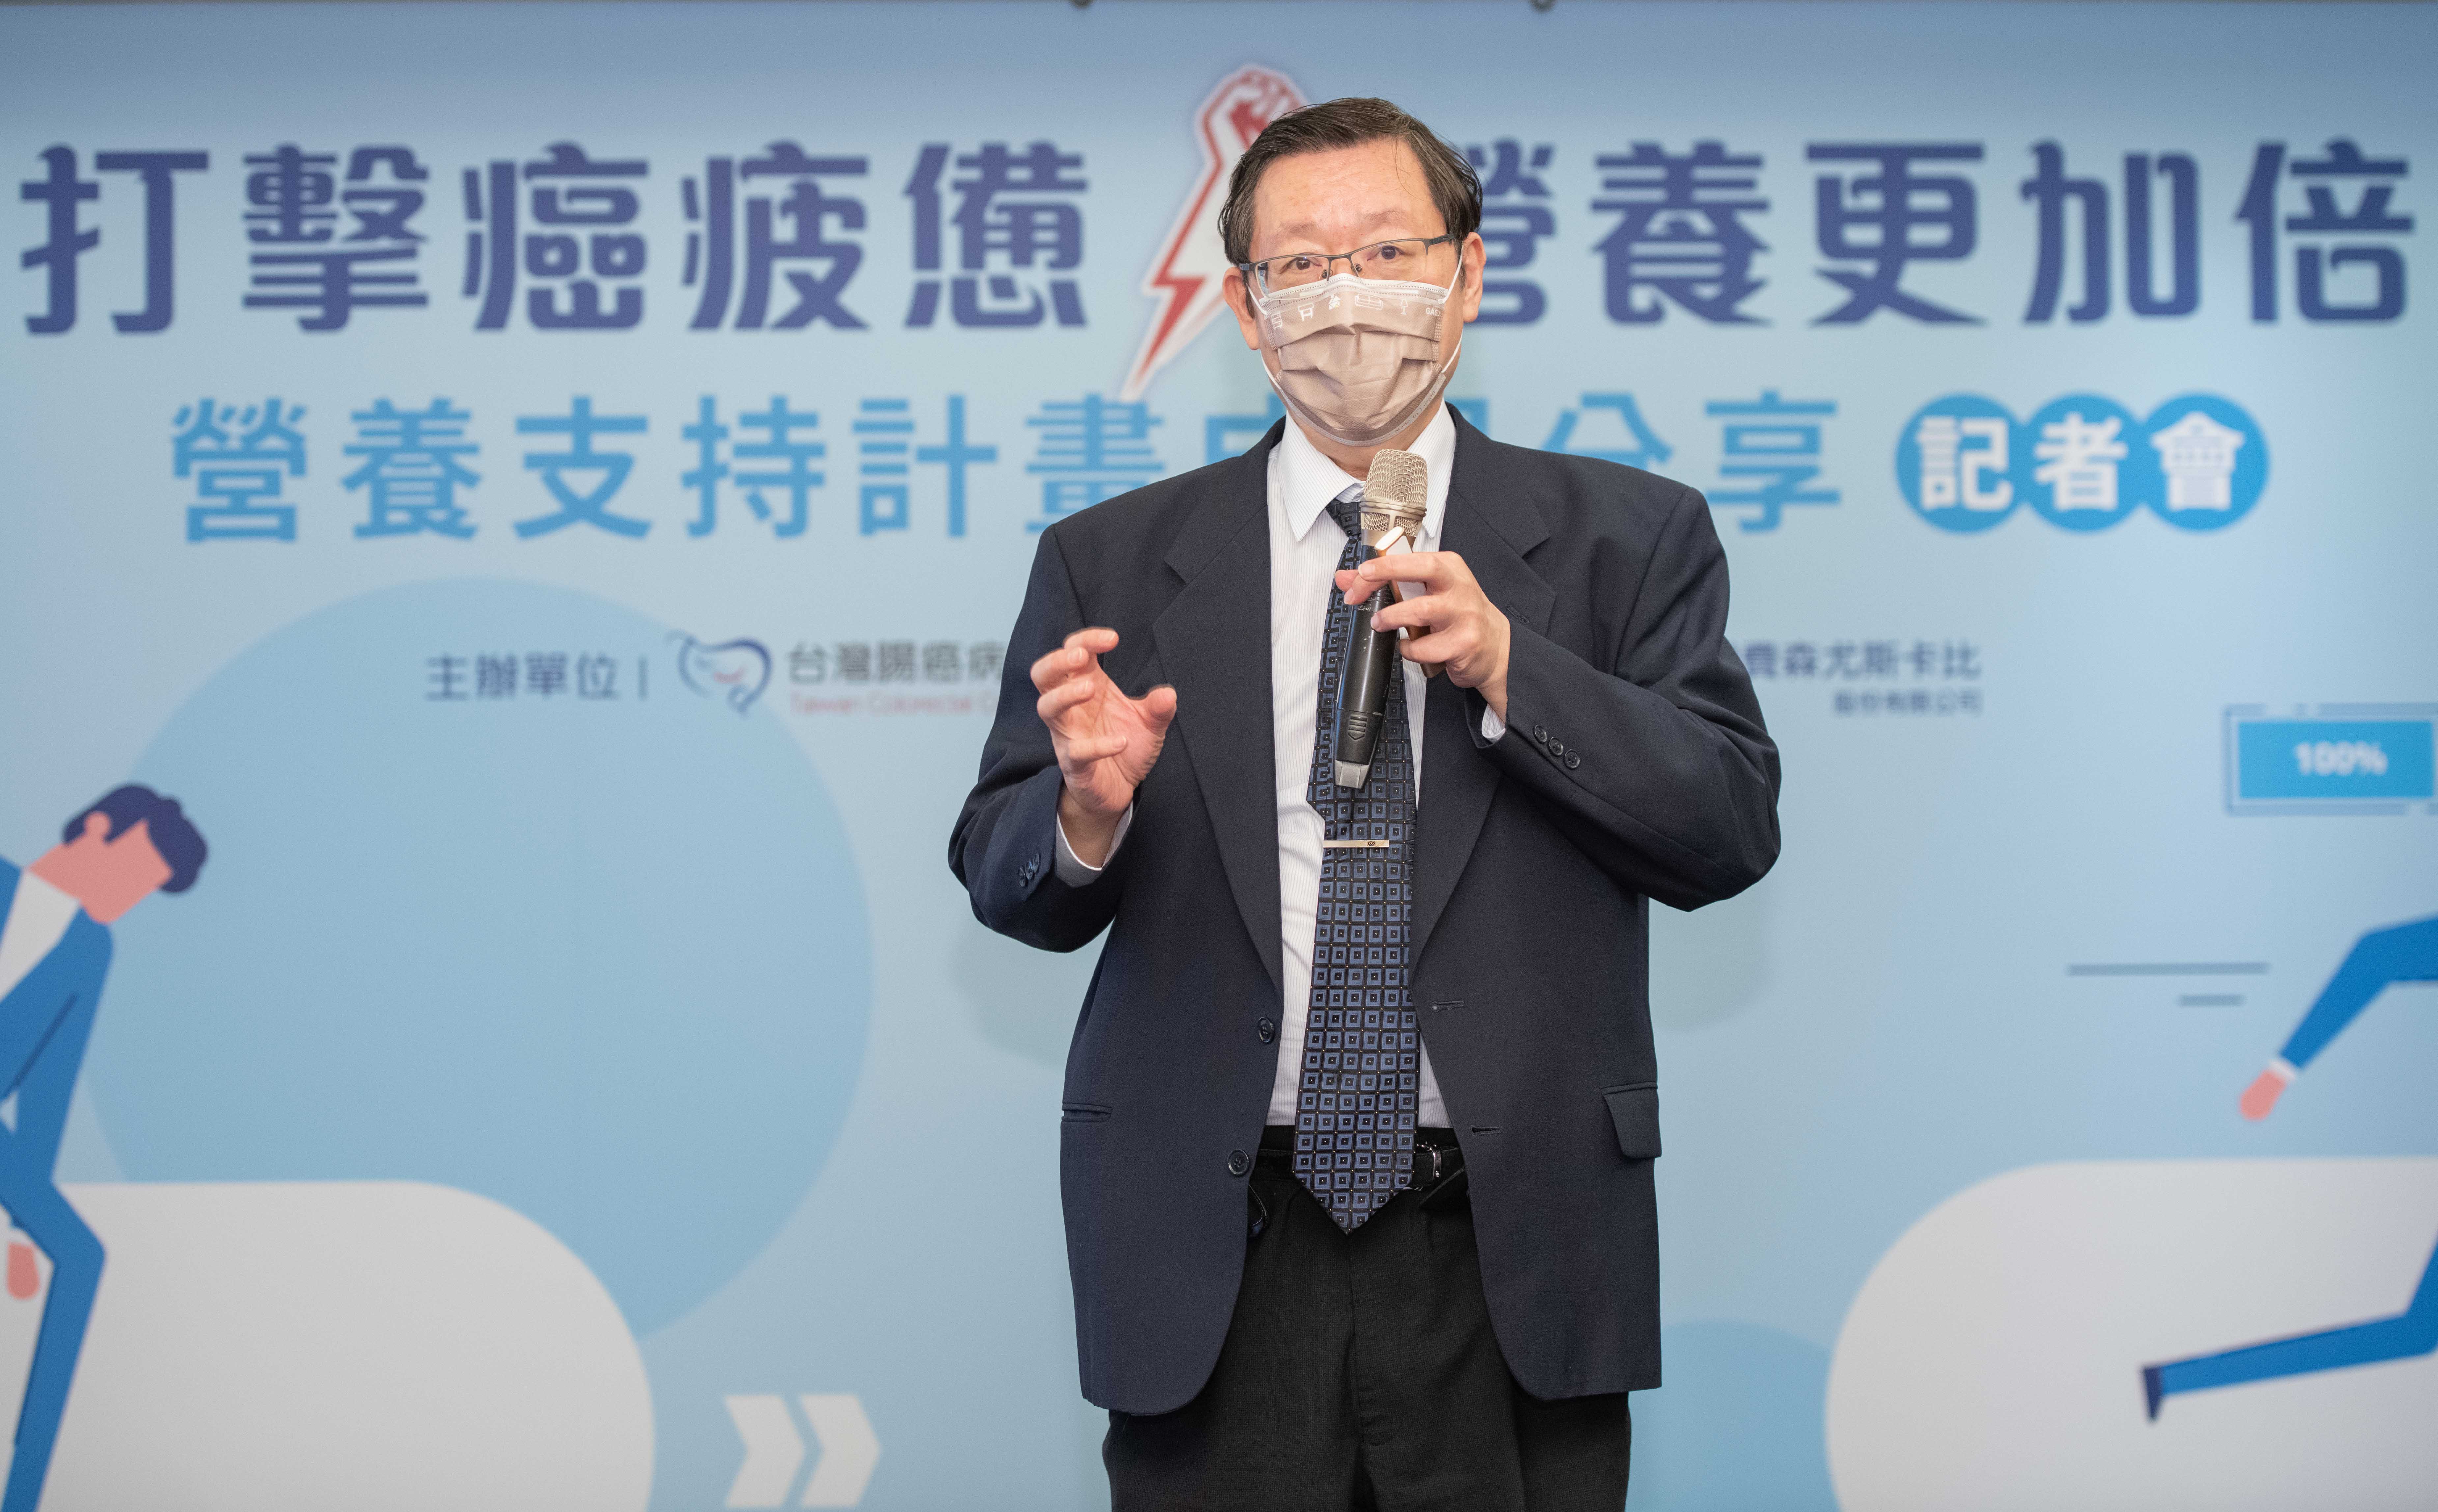 台 灣 腸 癌 病 友 協 會 榮 譽 理 事 長 暨 中 國 醫 藥 大 學 附 設 醫 院 外 科 部 副 主 任 王 輝 明 指 出 ， 正 確 的 營 養 介 入 對 於 改 善 癌 疲 憊 有 著 相 當 大 的 幫 助 。 